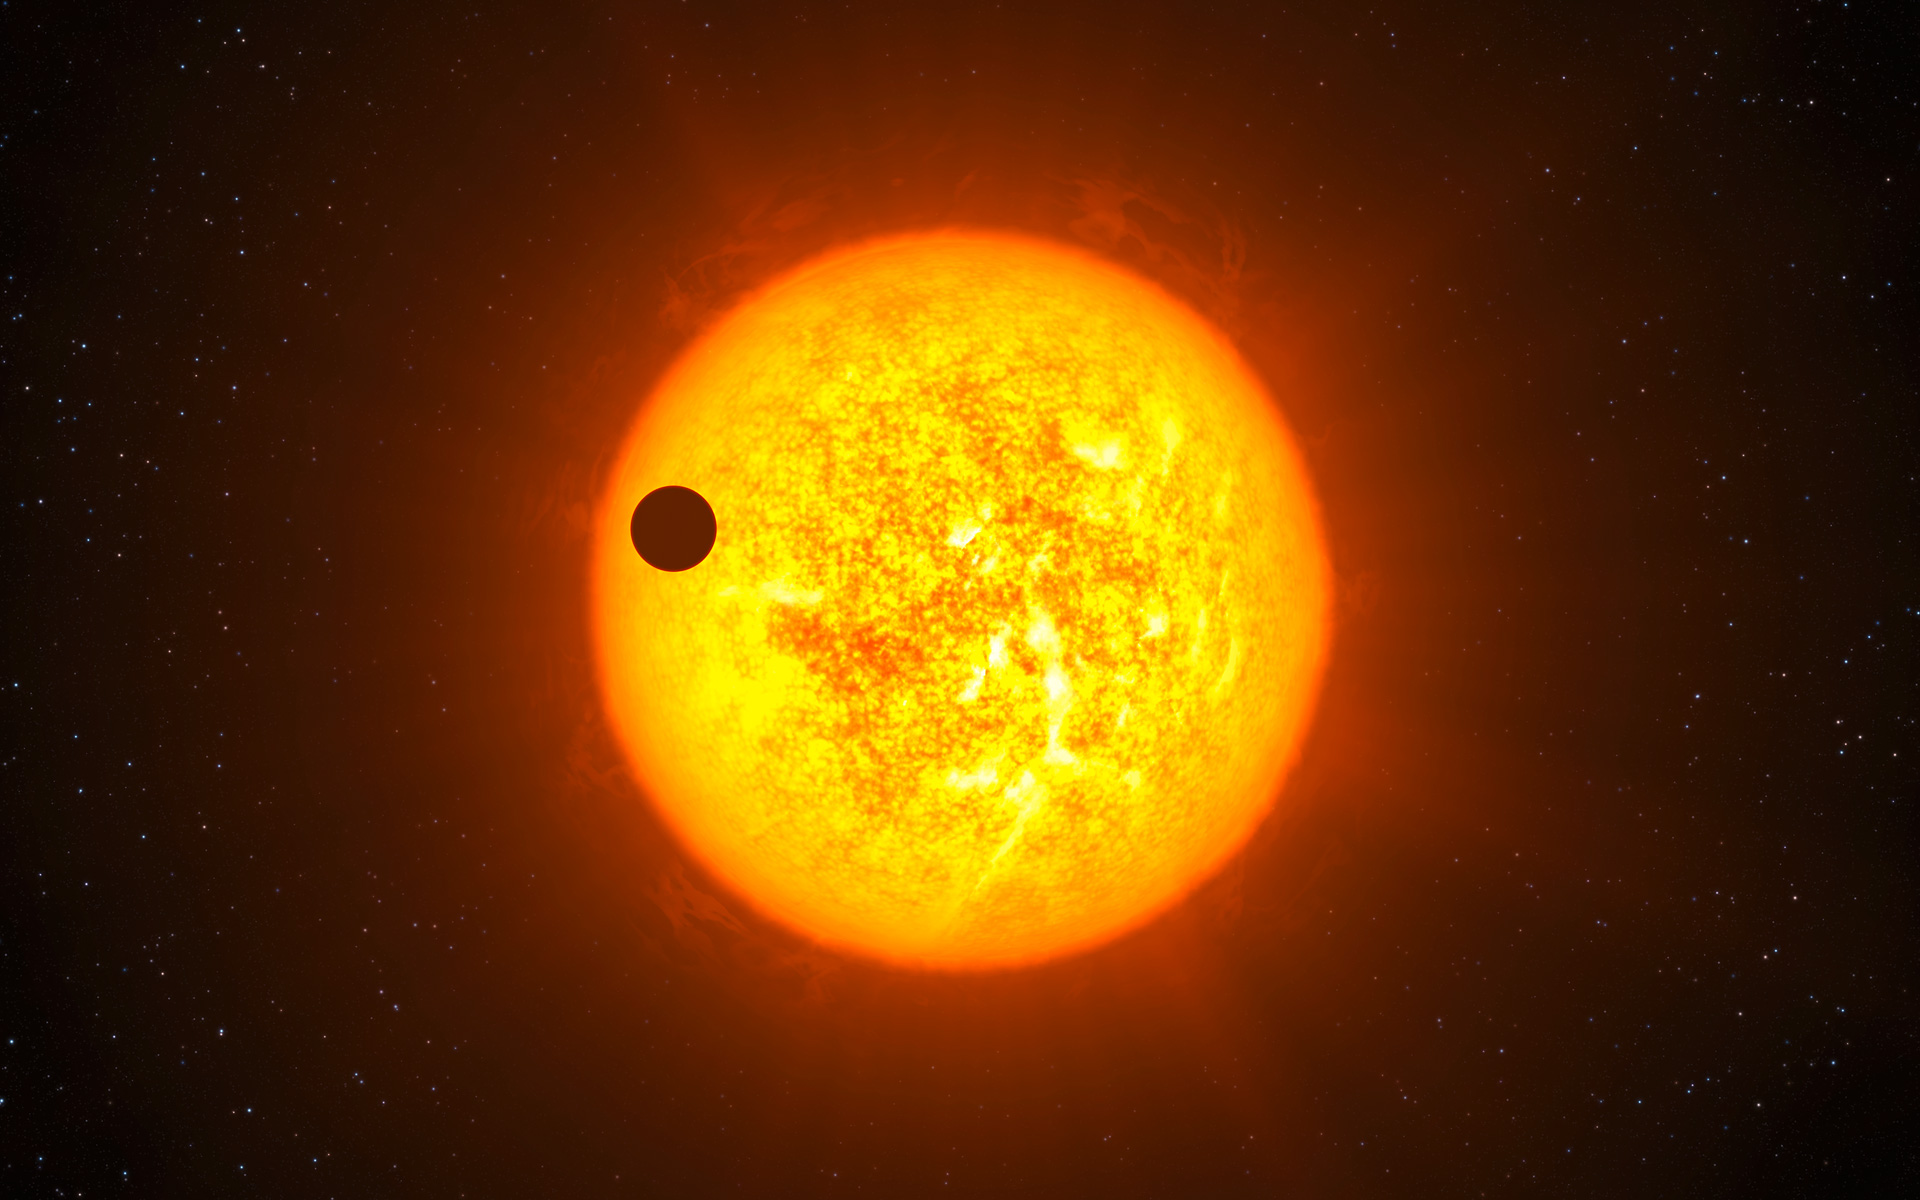 Une des techniques utilisées par l'humanité pour détecter des exoplanètes repose sur le transit de celles-ci devant leur étoile. Il est raisonnable de penser que des civilisations E.T. avancées font de même dans leur recherche d'une vie ailleurs. © Eso